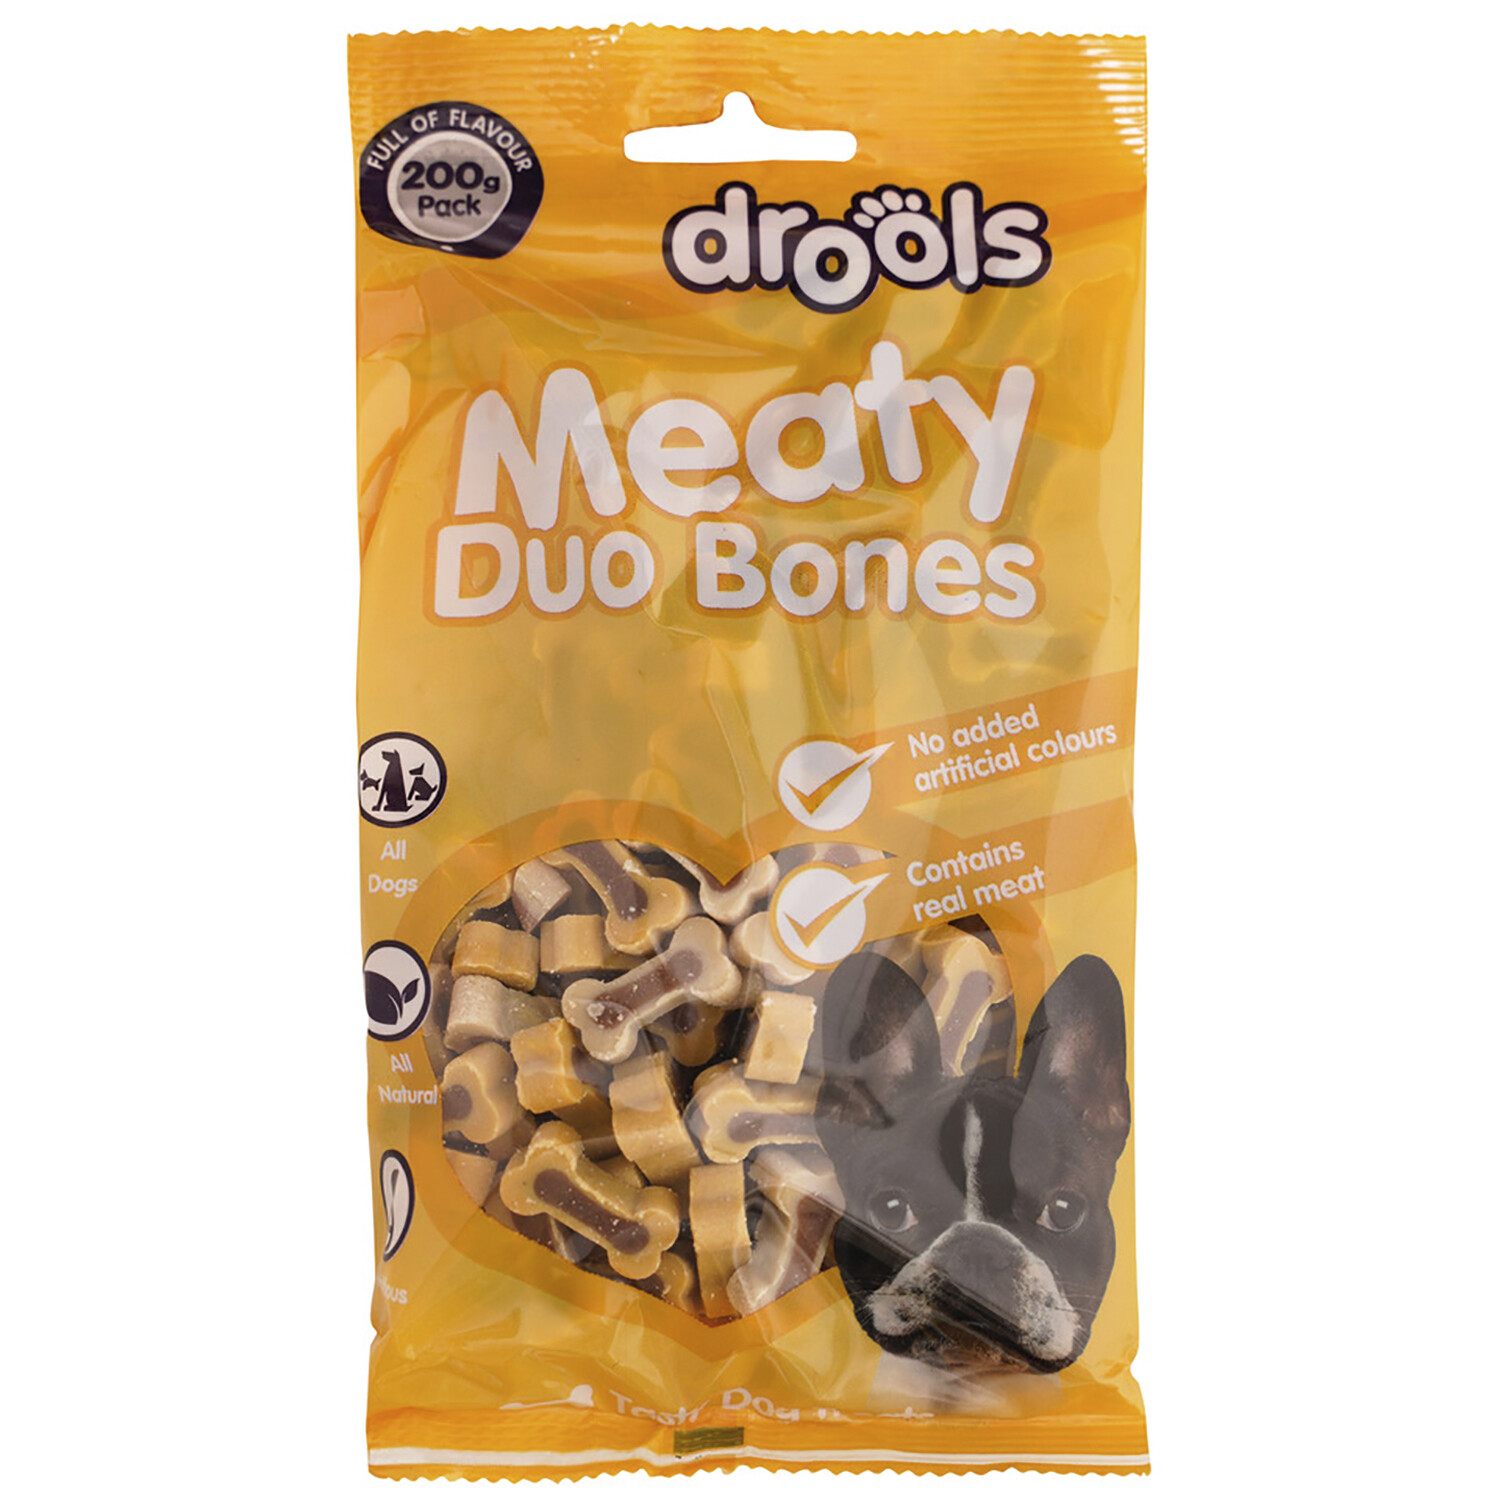 Drools Meaty Duo Bones Image